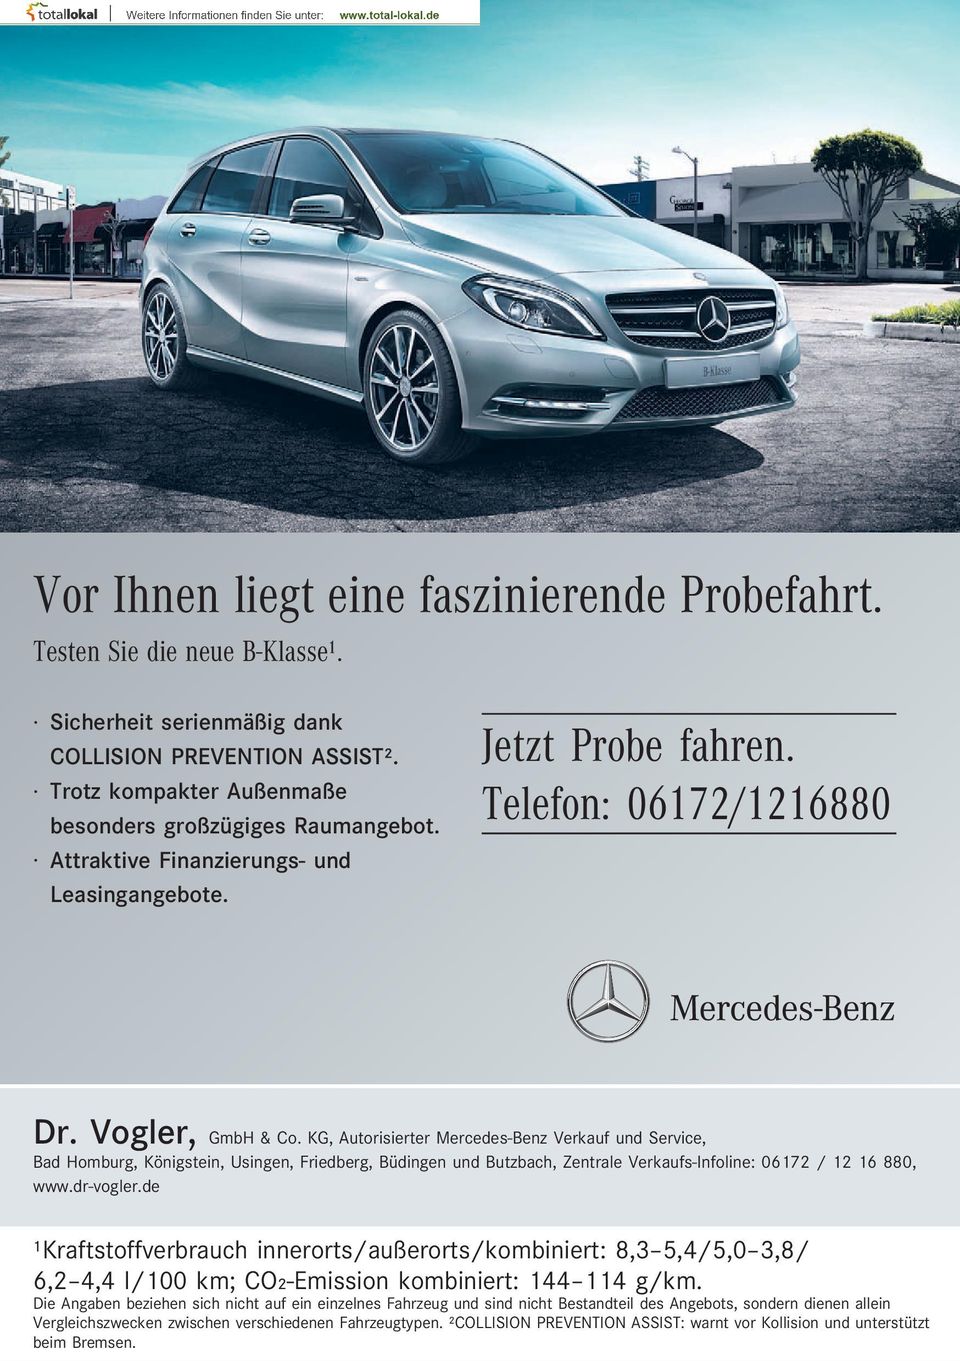 KG, Autorisierter Mercedes-Benz Verkauf und Service, Bad Homburg, Königstein, Usingen, Friedberg, Büdingen und Butzbach, Zentrale Verkaufs-Infoline: 06172 / 12 16 880, www.dr-vogler.